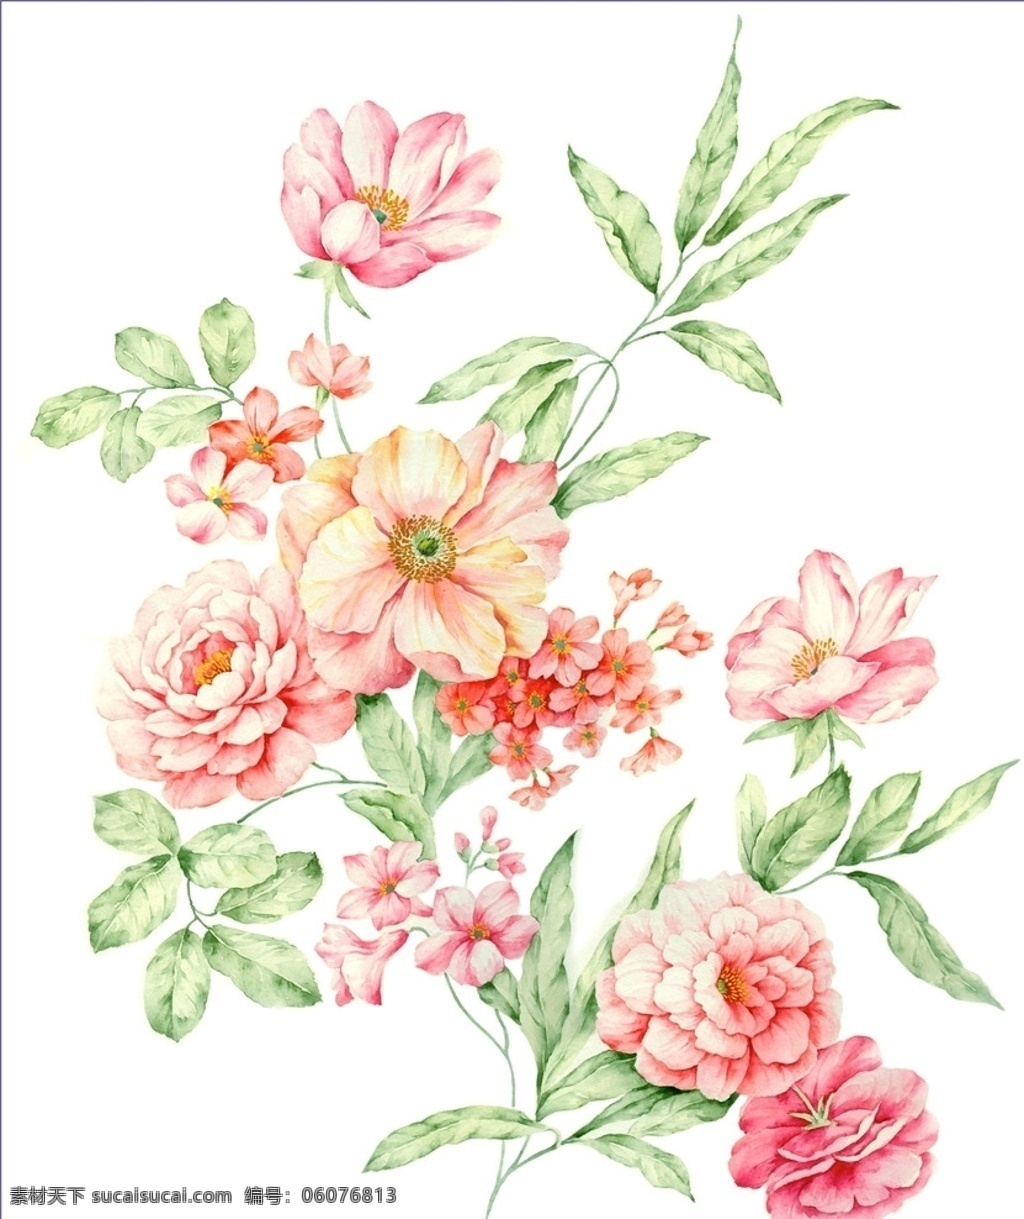 粉红花 绿叶 手绘 手绘花朵 花纹底纹 花朵 精致花朵 服装素材 矢量素材 窗帘素材